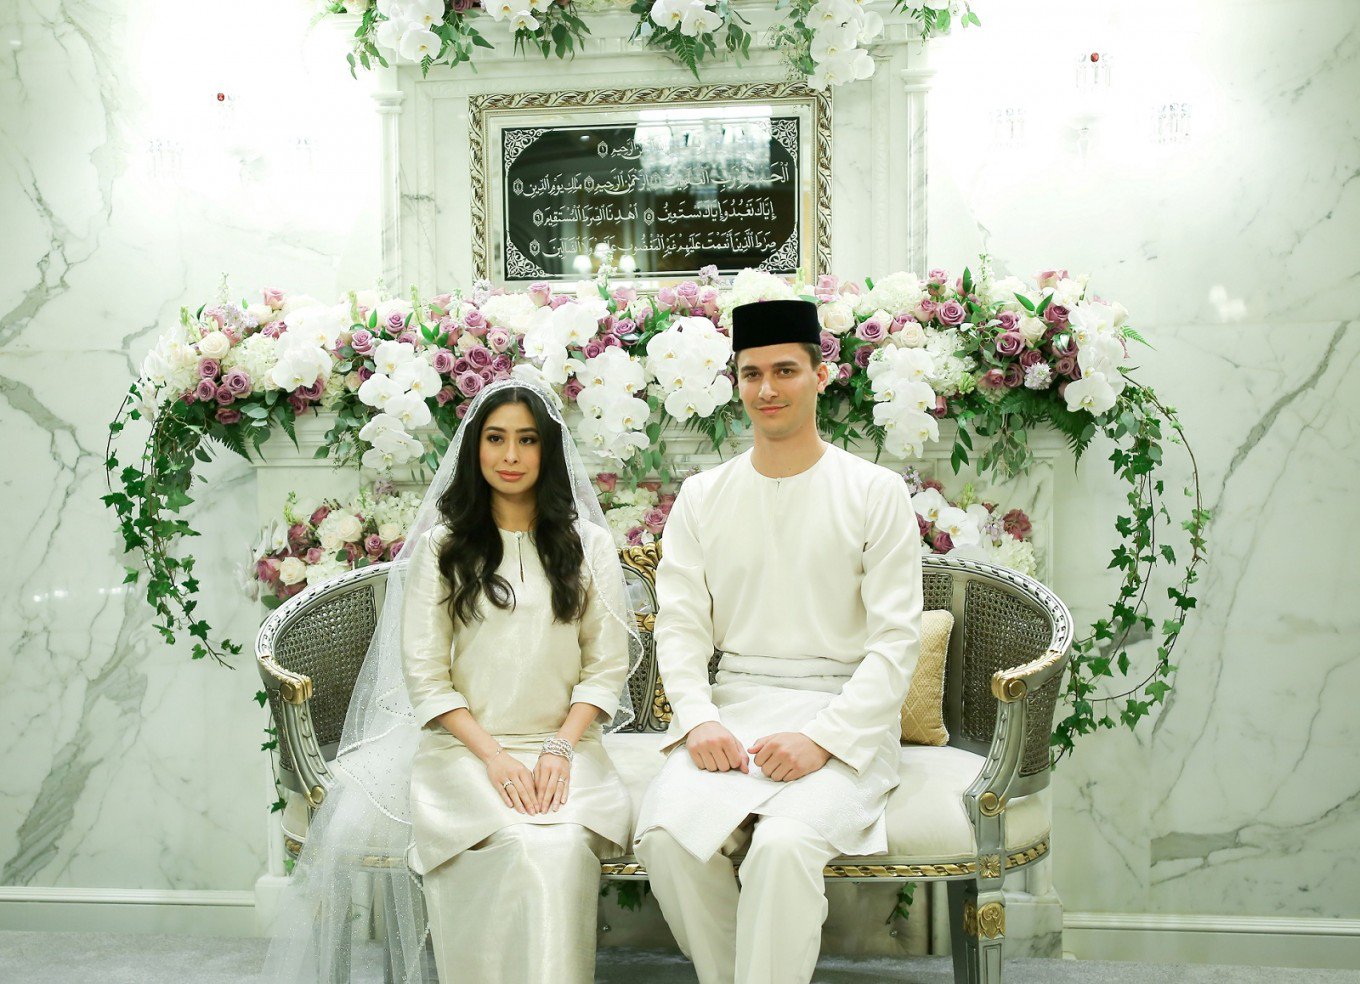 Malaysian princess marries Dutchman